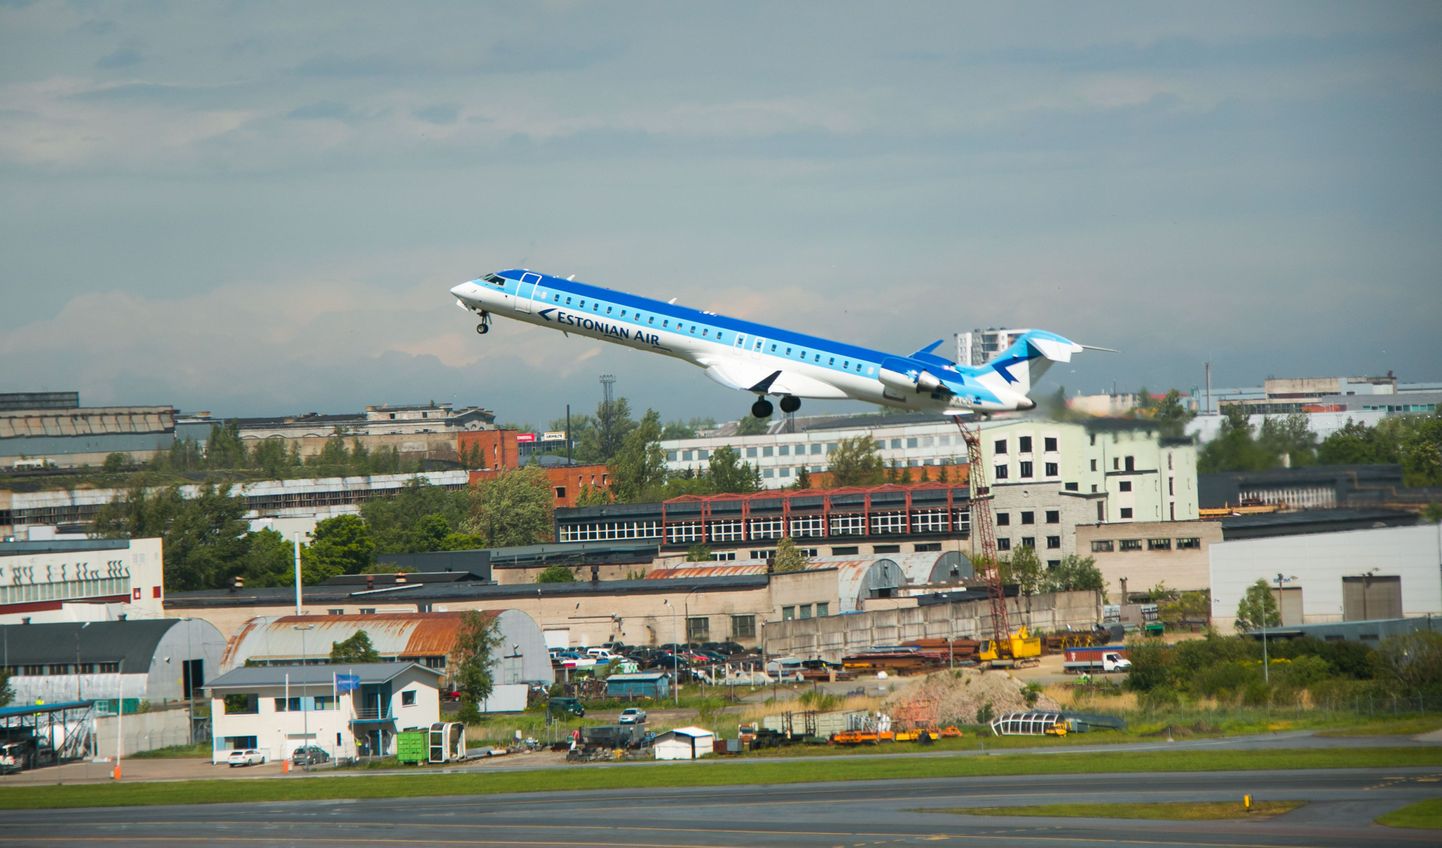 Estonian Airi lennuki pardale pääsemiseks tuleb krediitkaardiga maksta soovival kliendil end ka tuvastada.